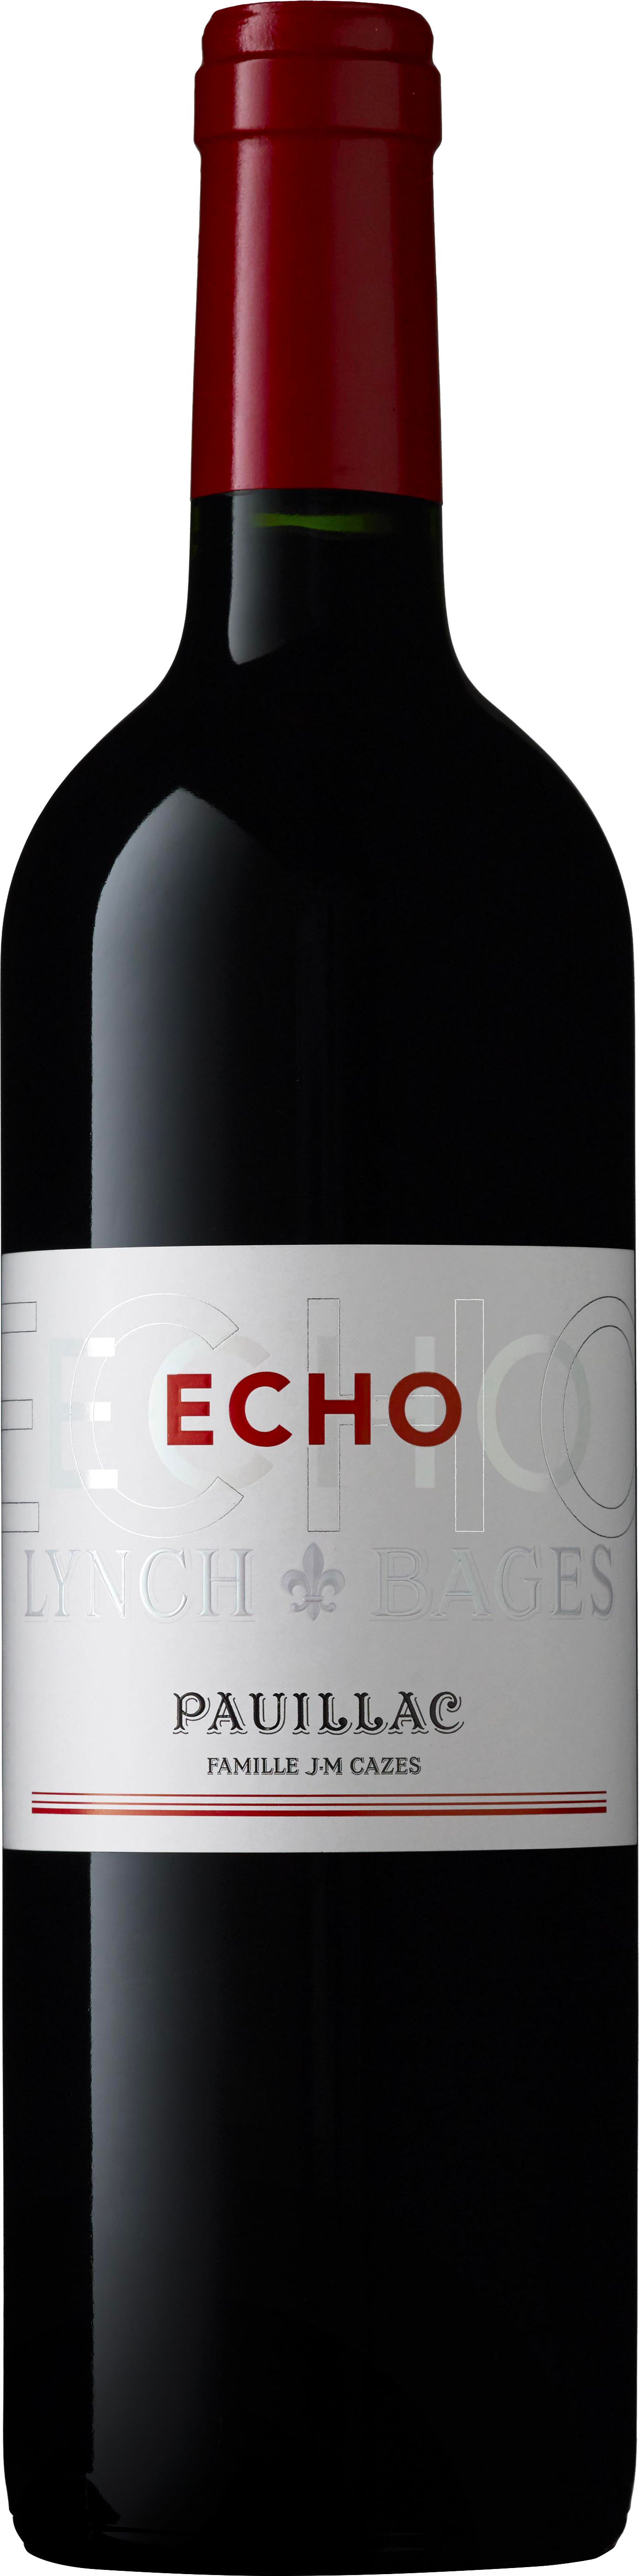 Echo lynch bages 2017 2me vin de LYNCH BAGES Pauillac, Bordeaux rouge